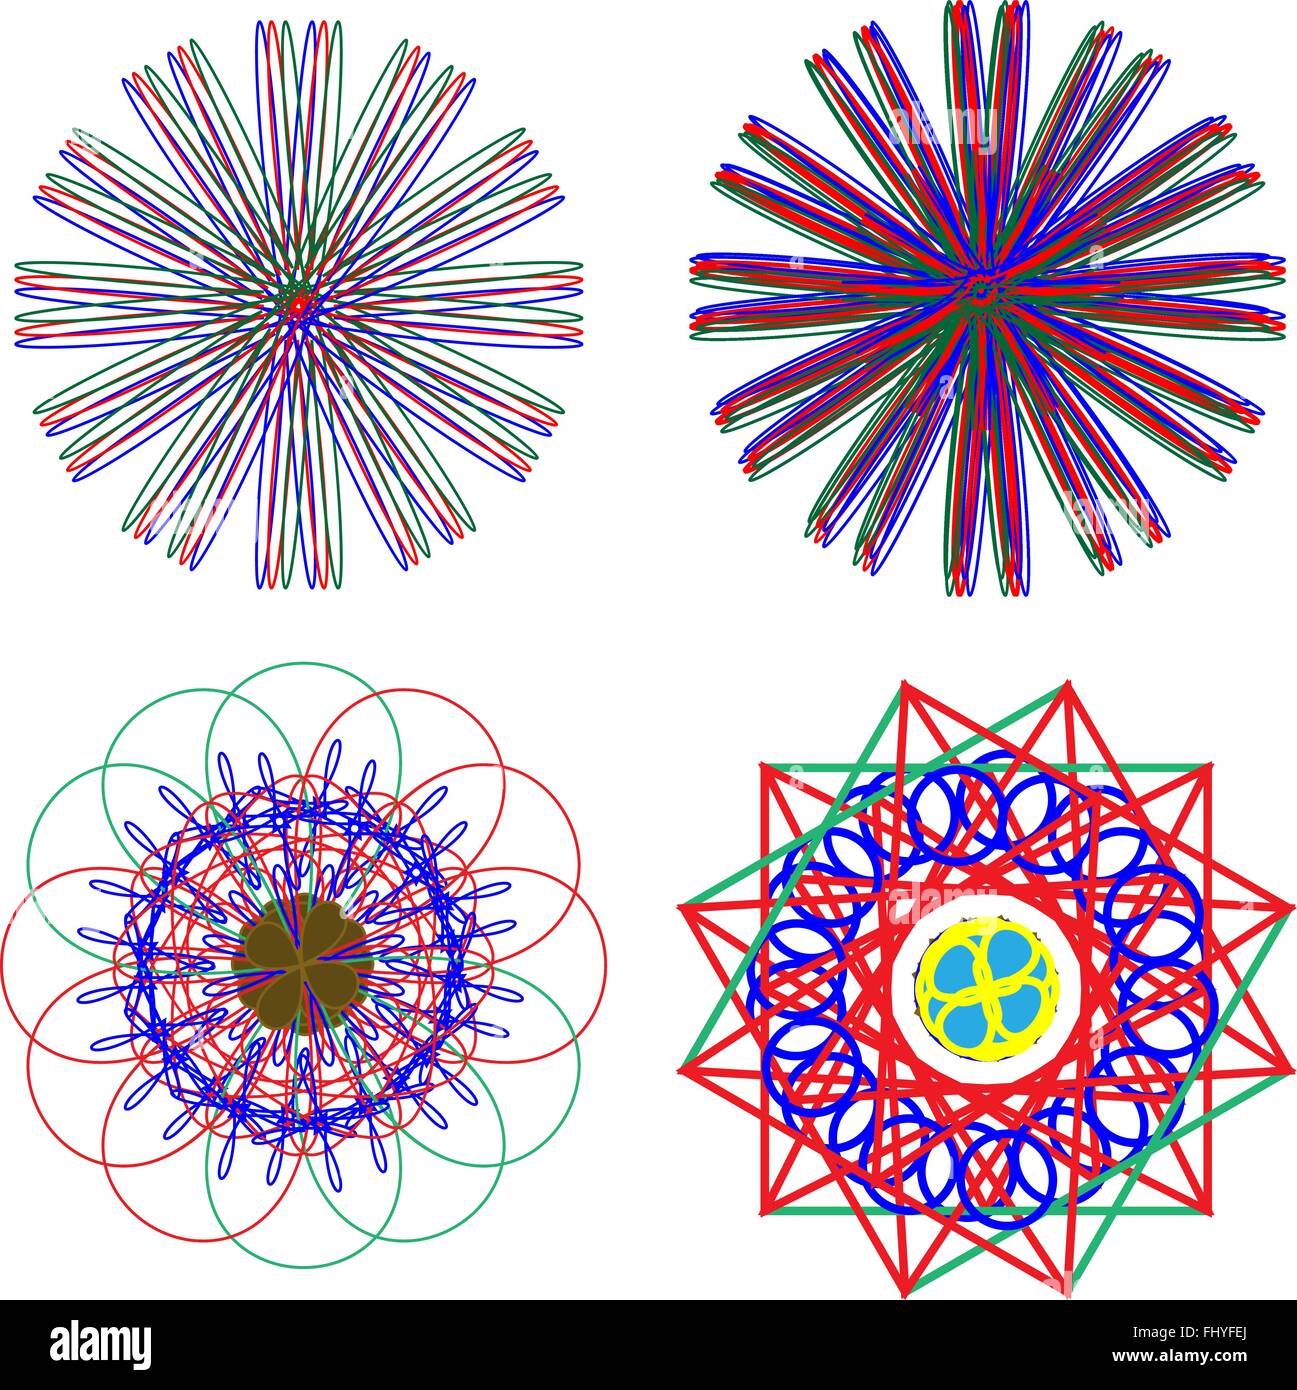 Abstrakte Blumen in verschiedenen Formen und Neon-Farben mit dominanten lila Farbe. Digitalen Hintergrund-Vektor-Illustration. Stock Vektor